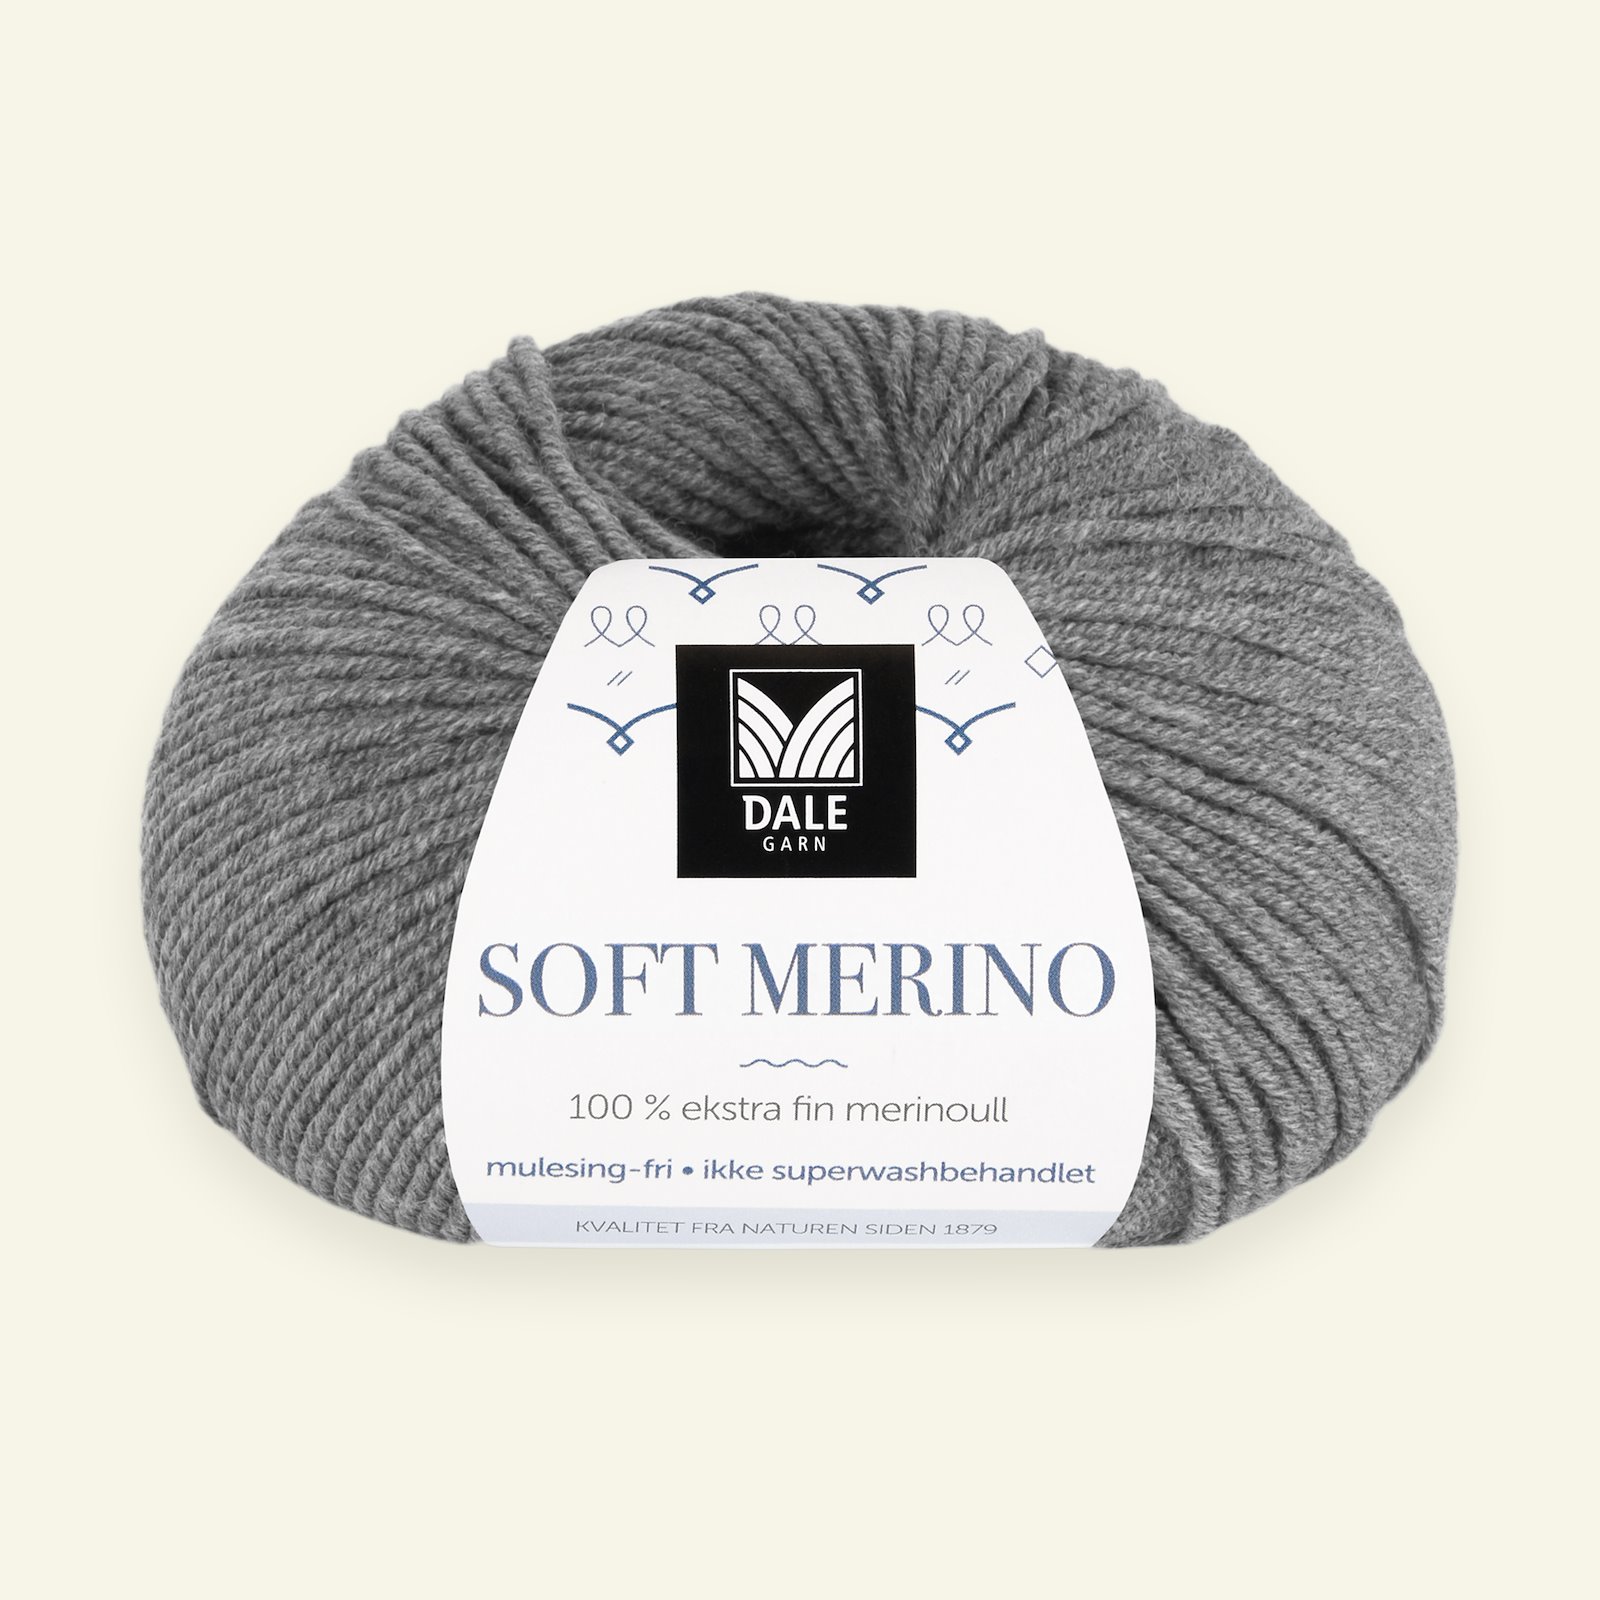 Dale Garn, 100% Extrafeine Merino-Wolle "Soft Merino", grau mel. (3003) 90000325_pack